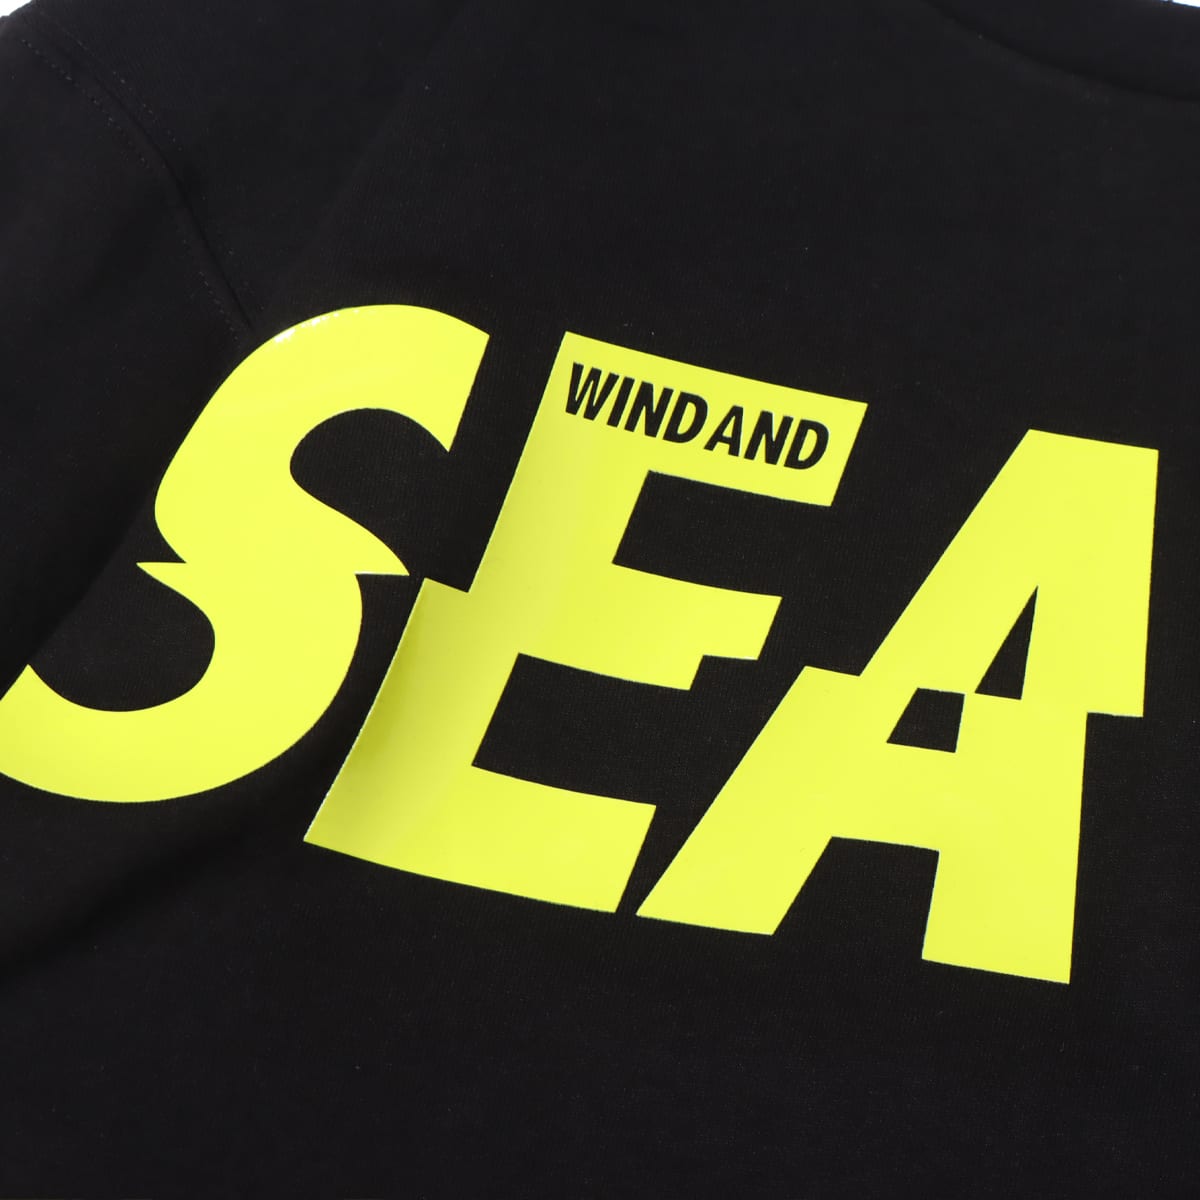 puma x  WIND AND SEA  Tシャツ　L状態